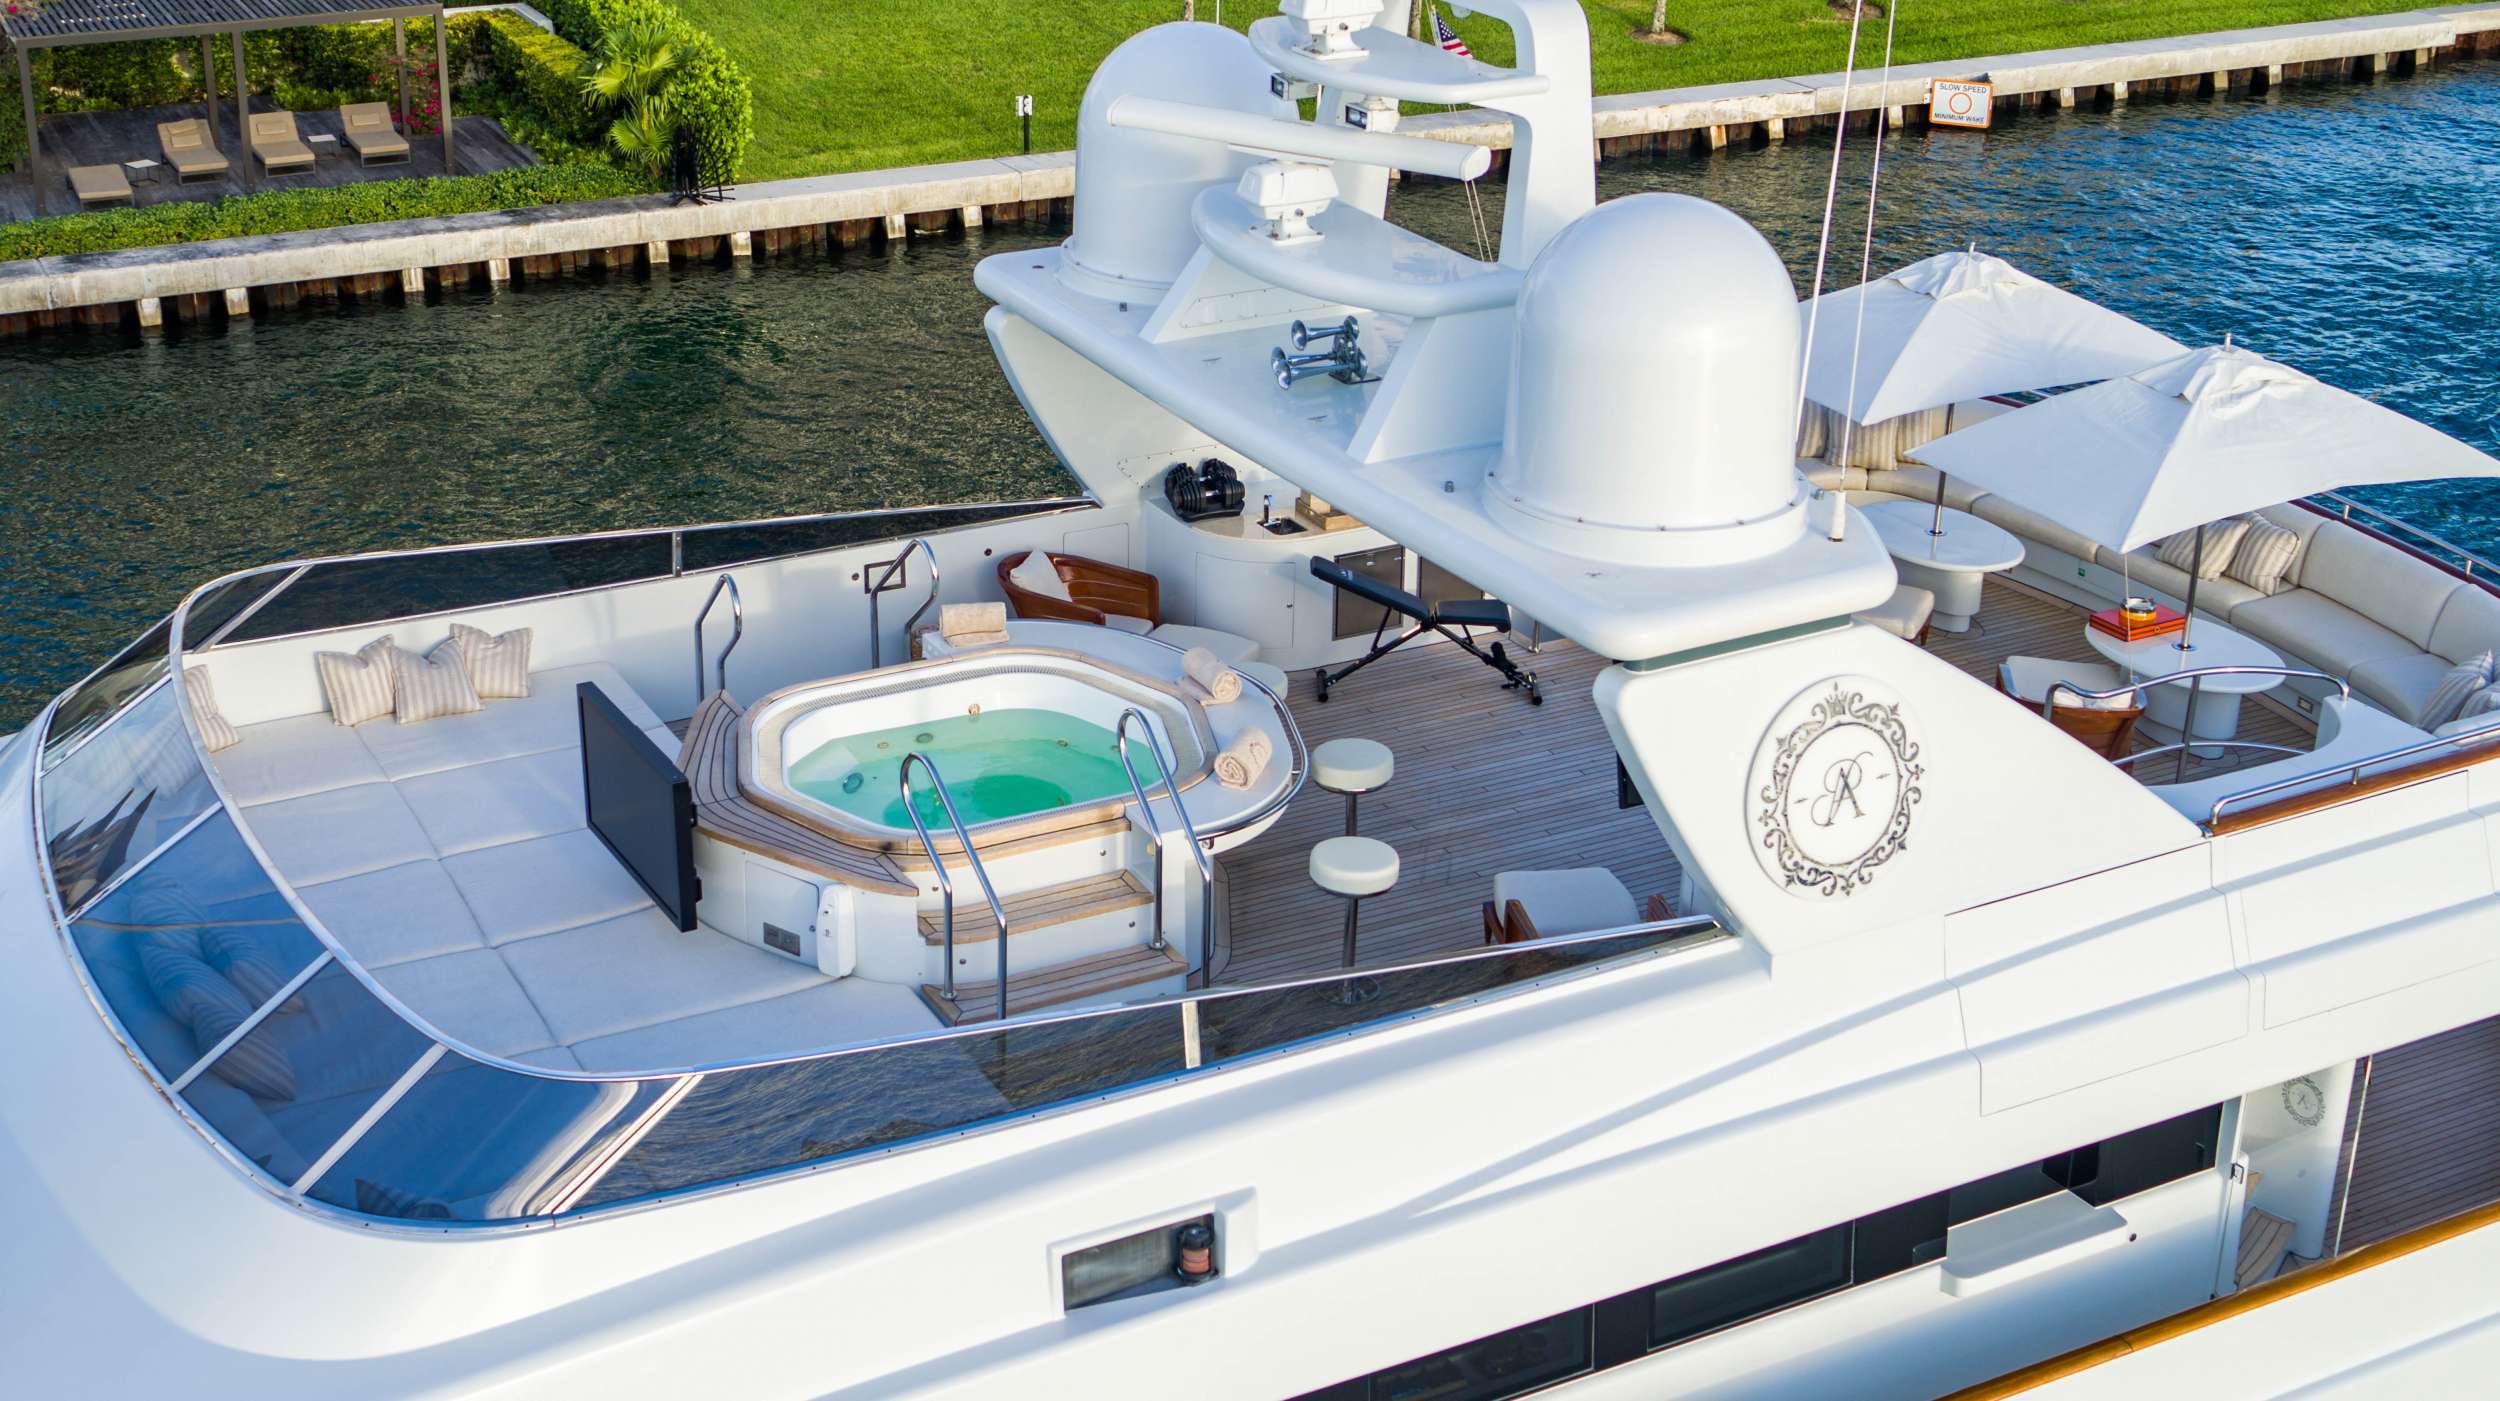 Princess Anna - Motor Boat Charter USA & Boat hire in Florida & Bahamas 3